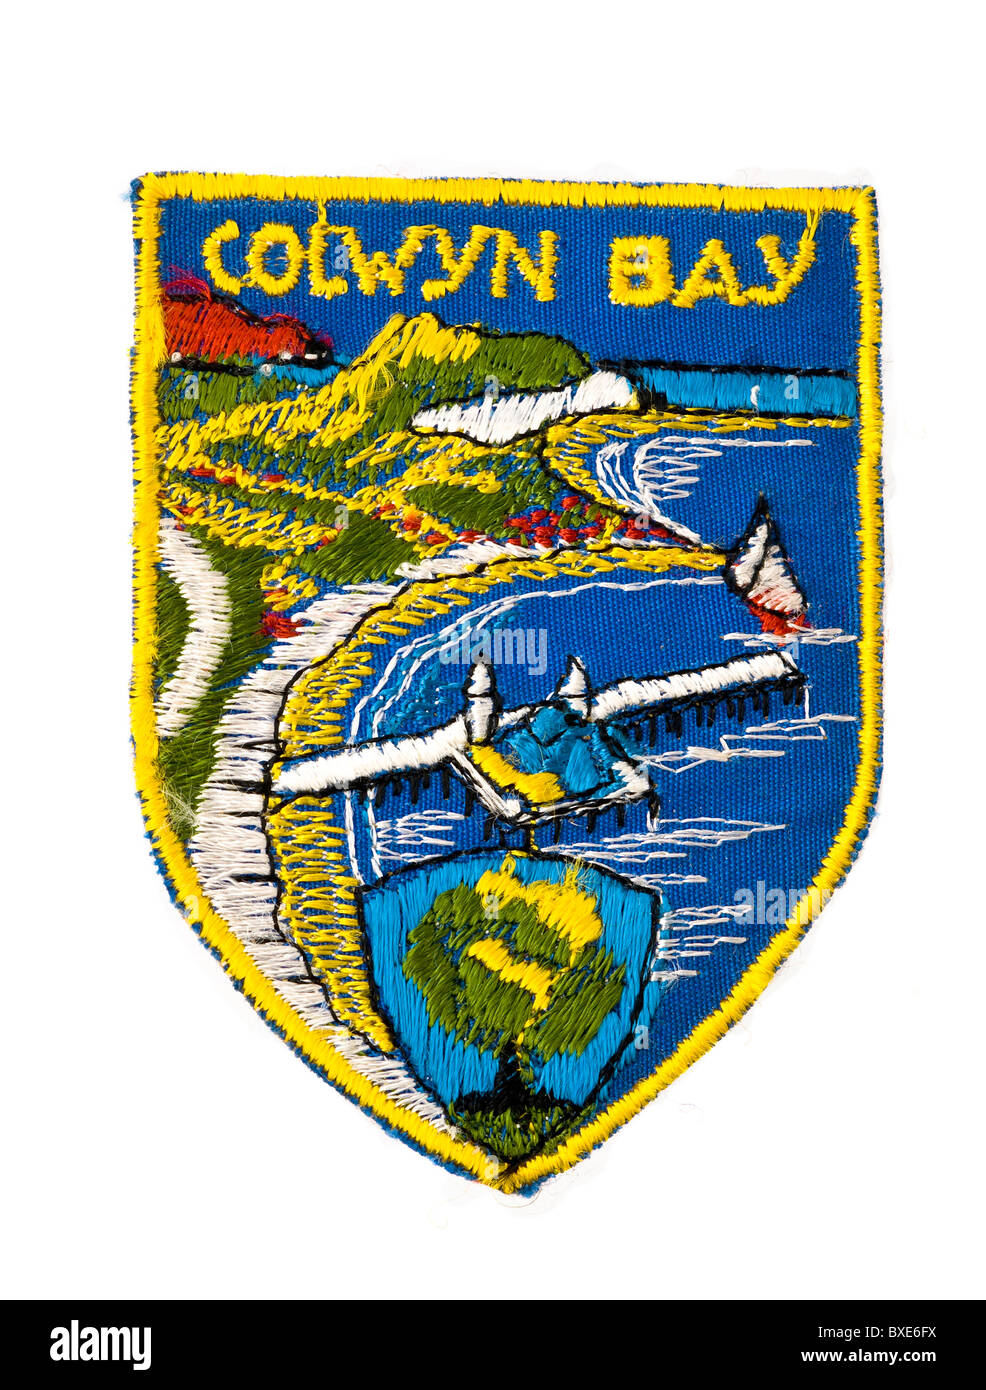 Insigne tissu brodé, ou patch, dépeignant Colwyn Bay, Pays de Galles. La forme du bouclier. À partir de 1964. Banque D'Images